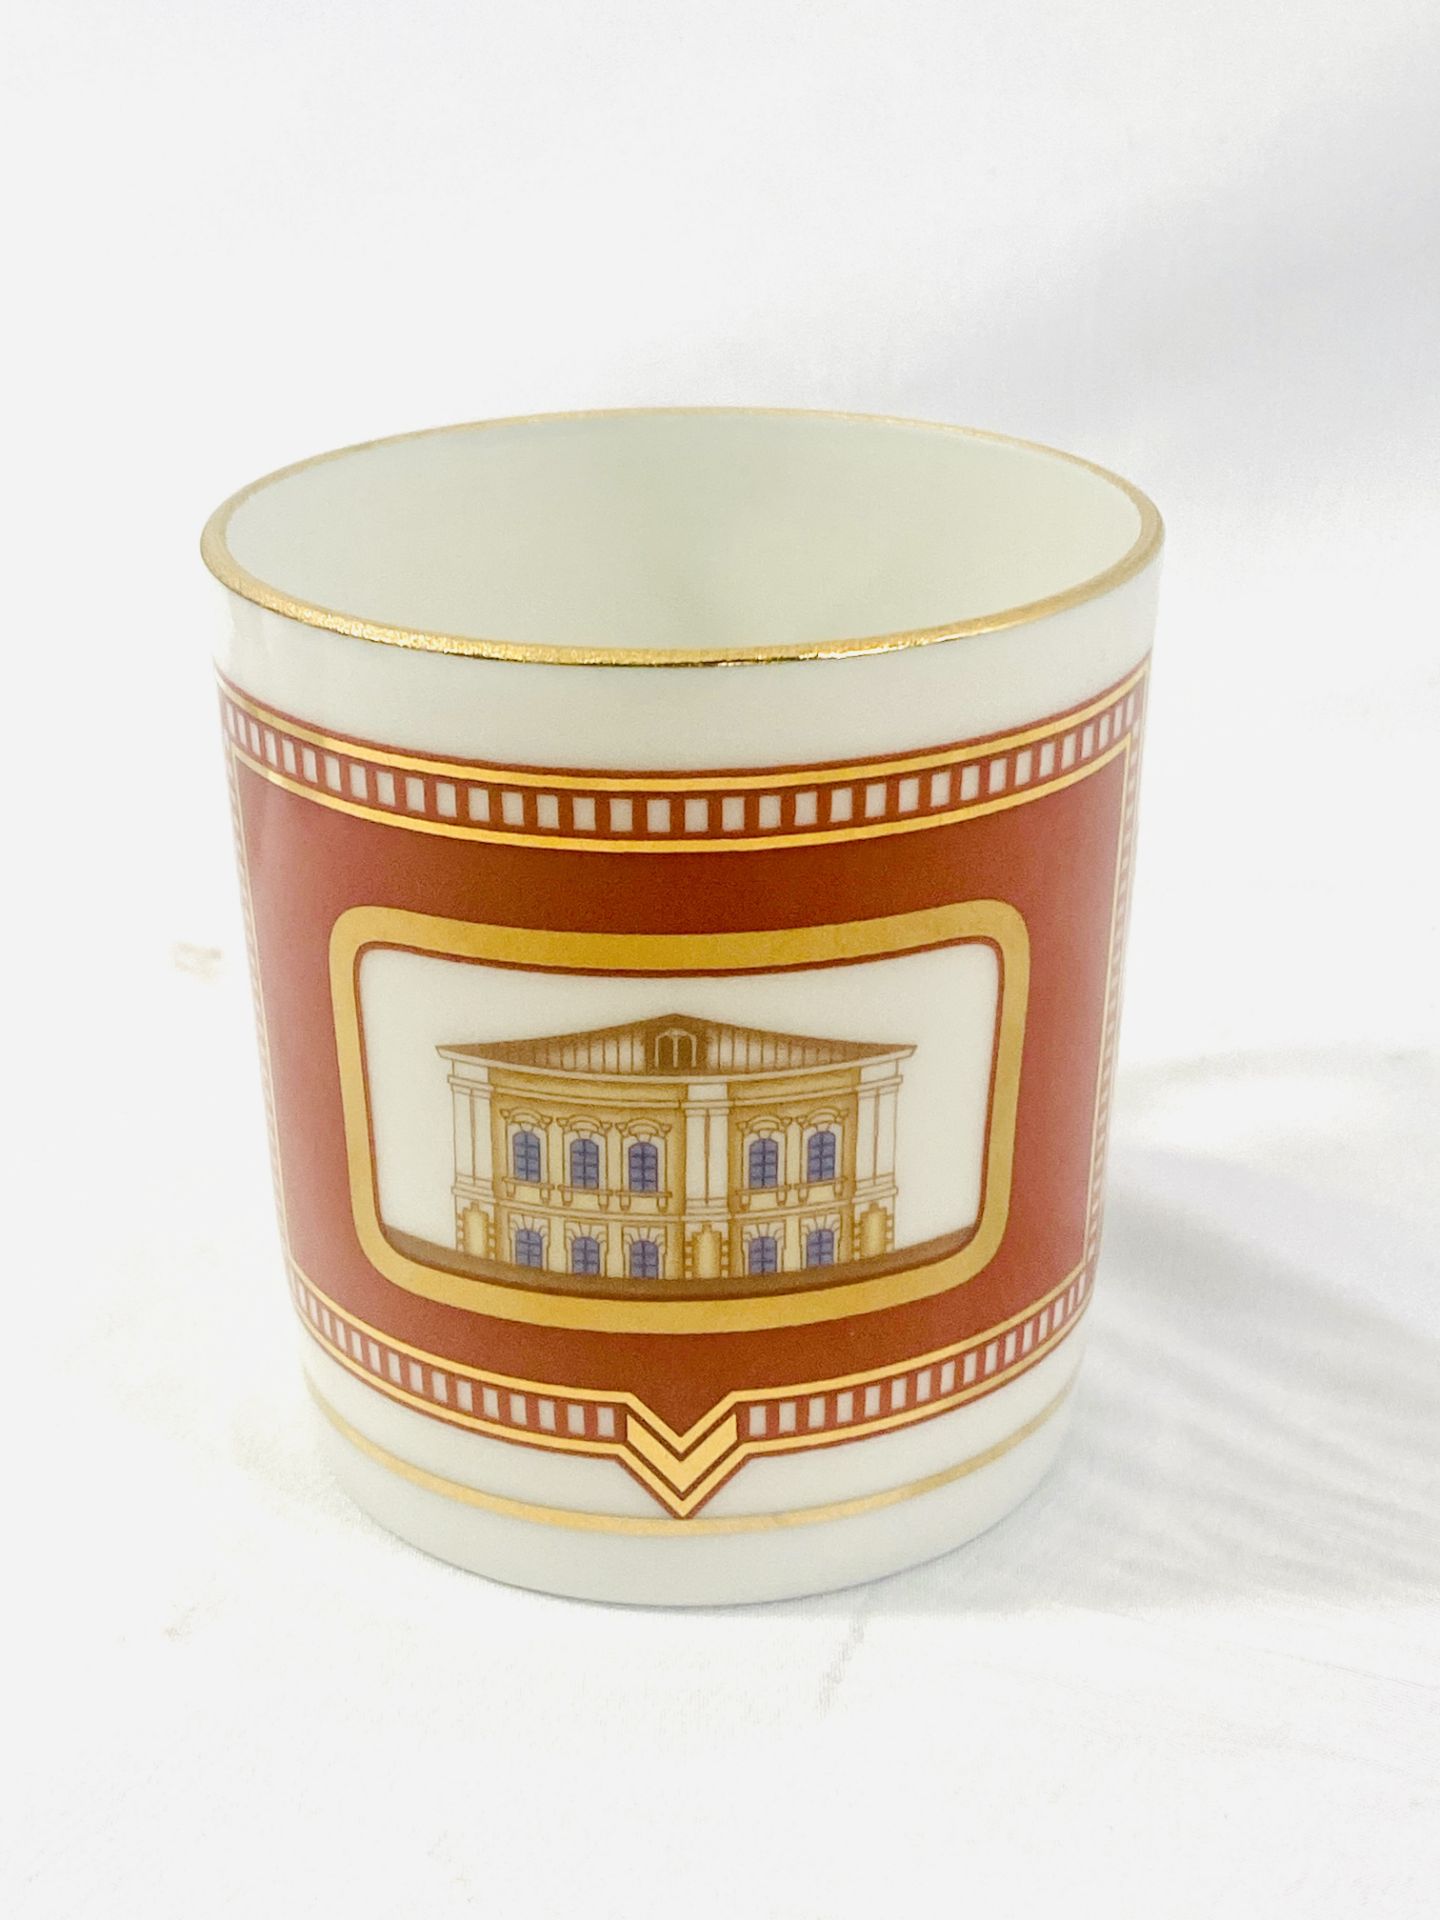 Imperial Porcelain tea set - Image 8 of 12